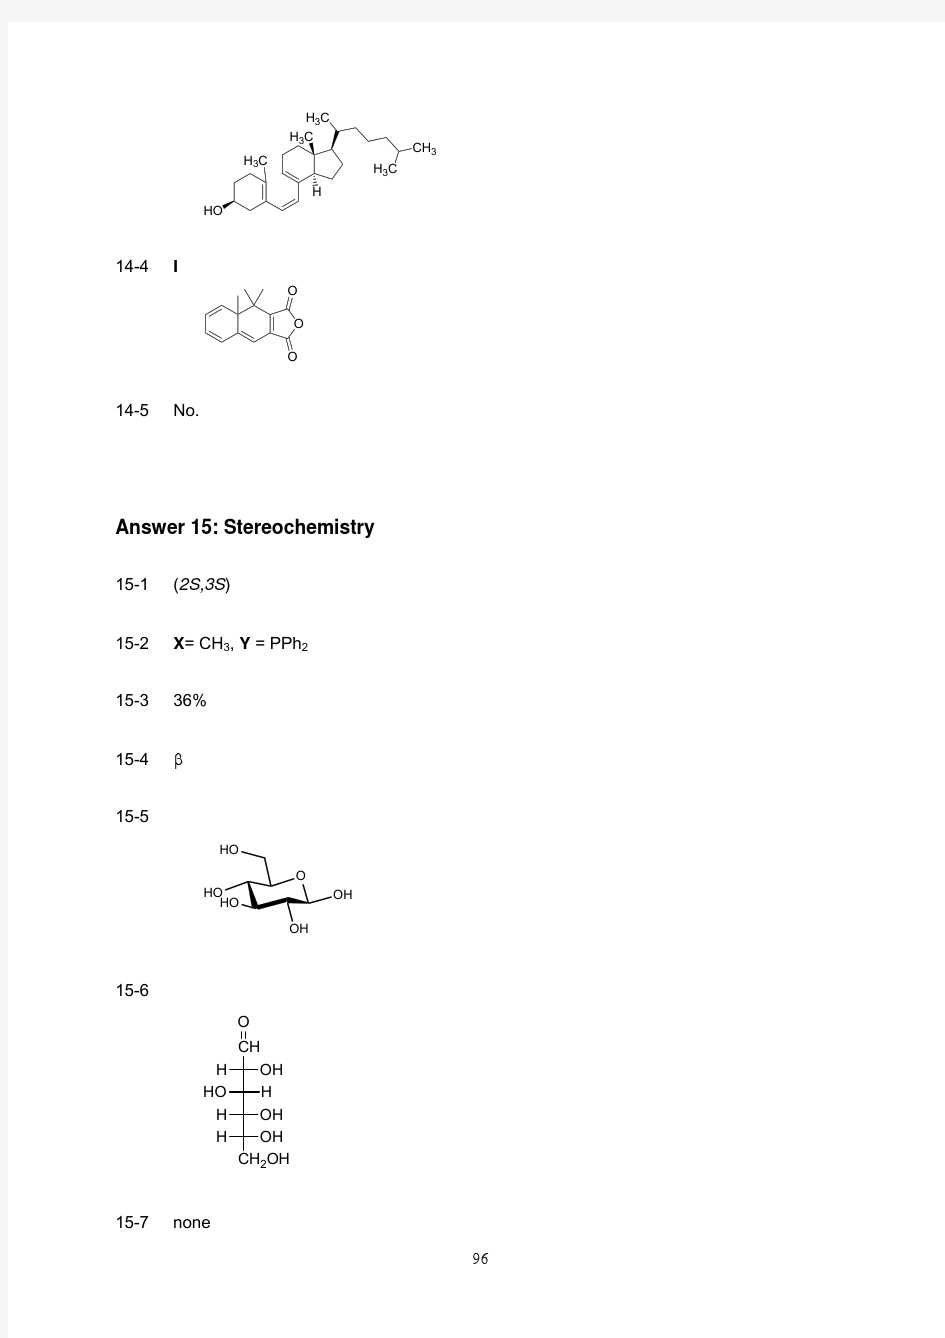 2014年化学竞赛——2005年第37届IChO预备试题答案(英文)13-18有机化学